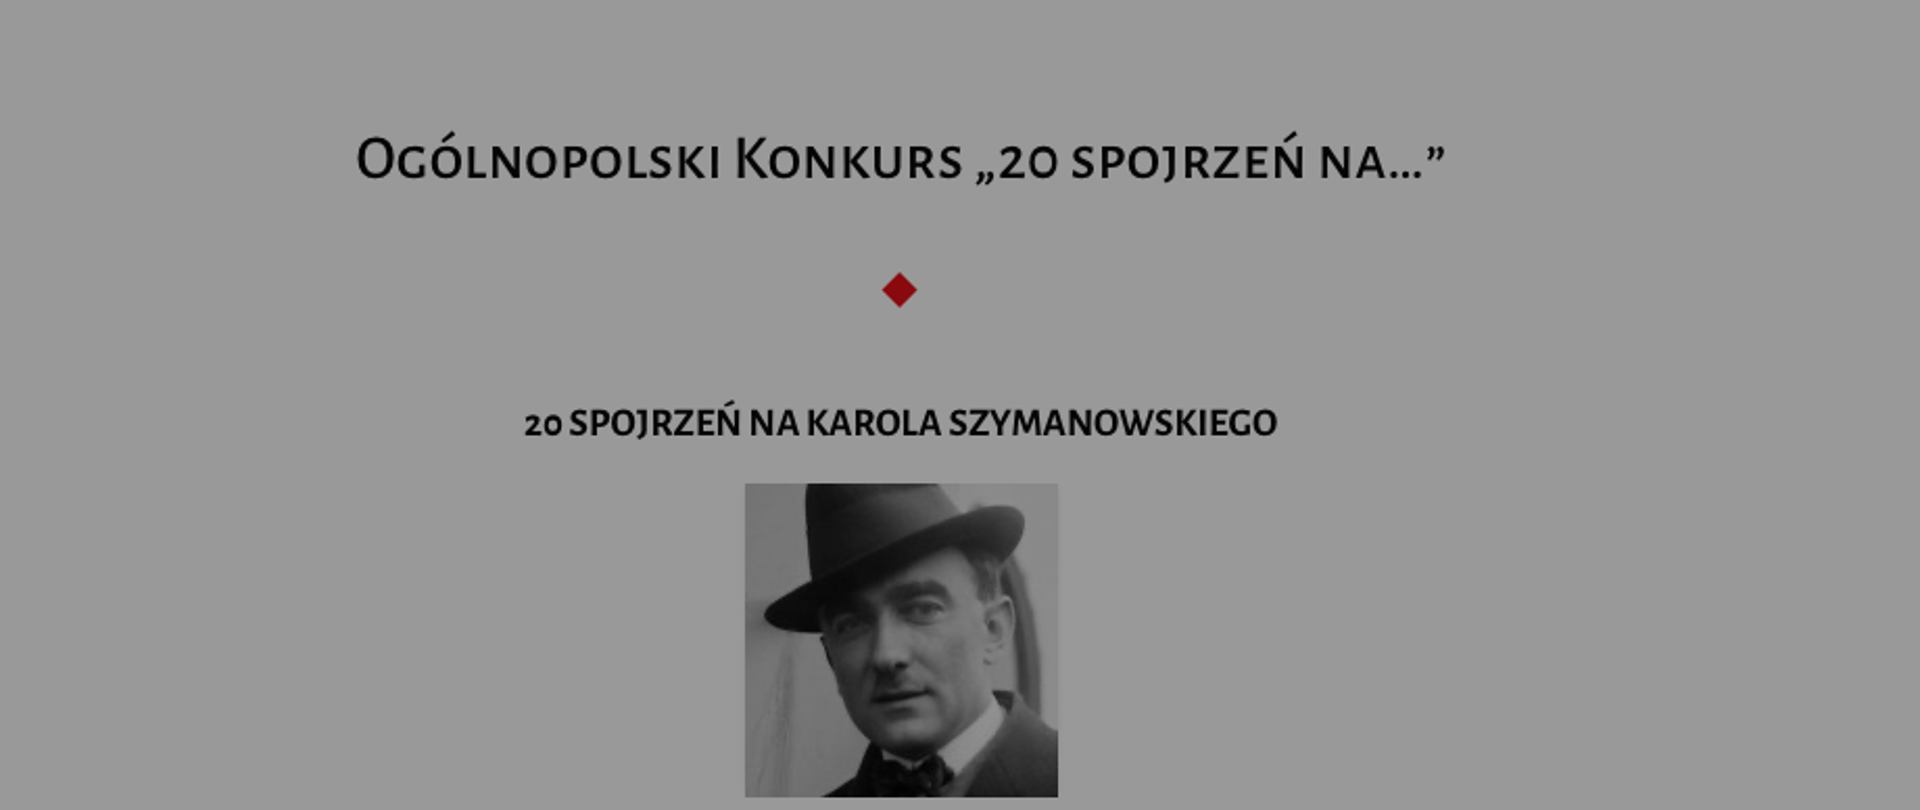 Zdjęcie Karola Szymanowskiego na szarym tle, wraz z zapowiedzią konkursu "20 spojrzeń na Karola Szymanowskiego"